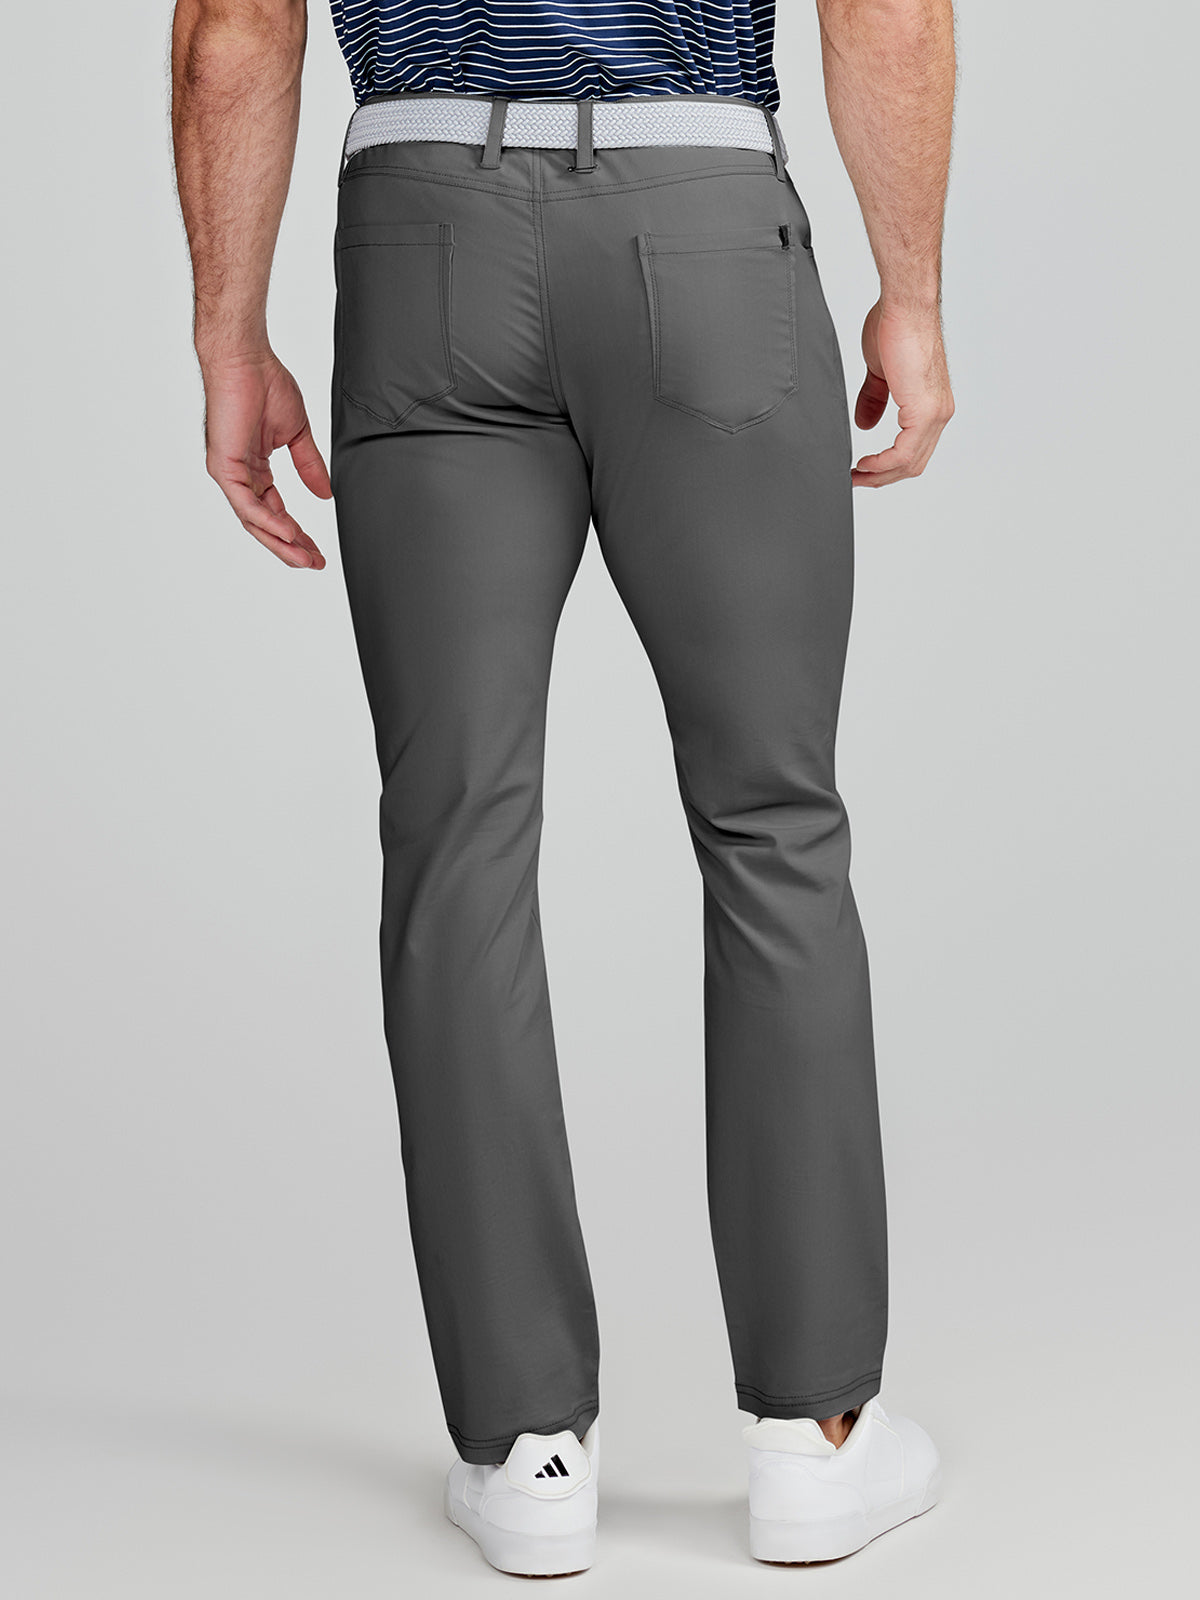 Tailored Fit Pants, Men's Motion Pants